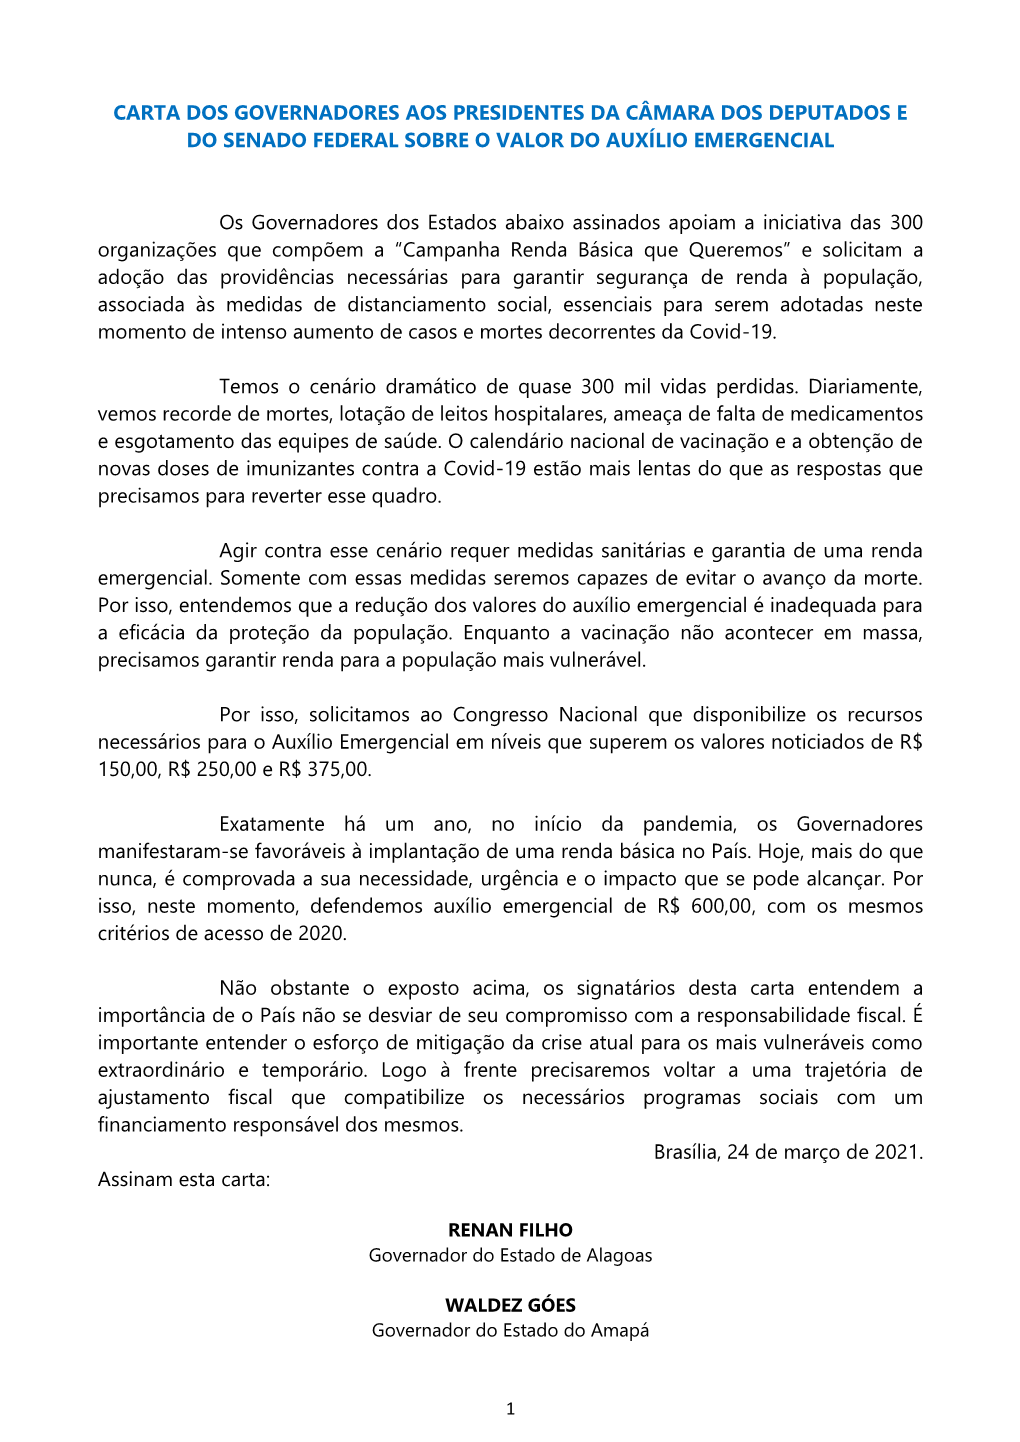 Carta Dos Governadores Aos Presidentes Da Câmara Dos Deputados E Do Senado Federal Sobre O Valor Do Auxílio Emergencial